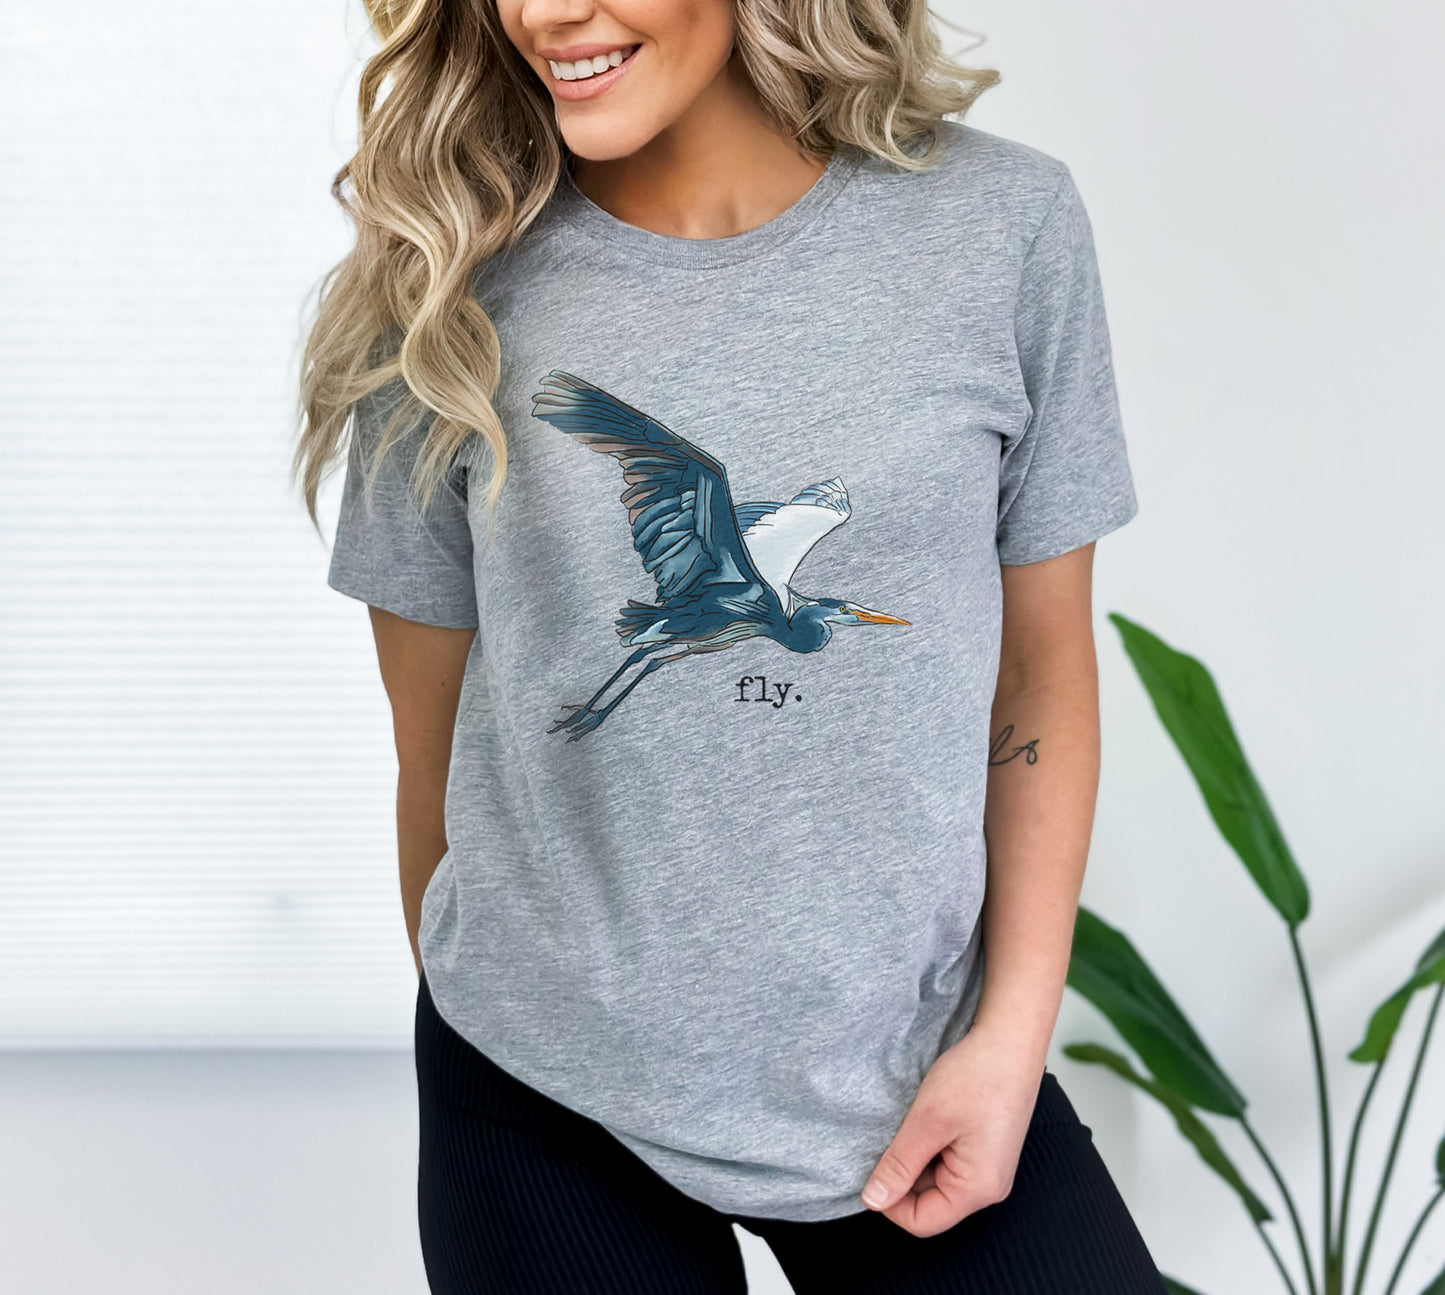 "Fly" Blue Heron ADULT Summer at the Lake T-Shirt